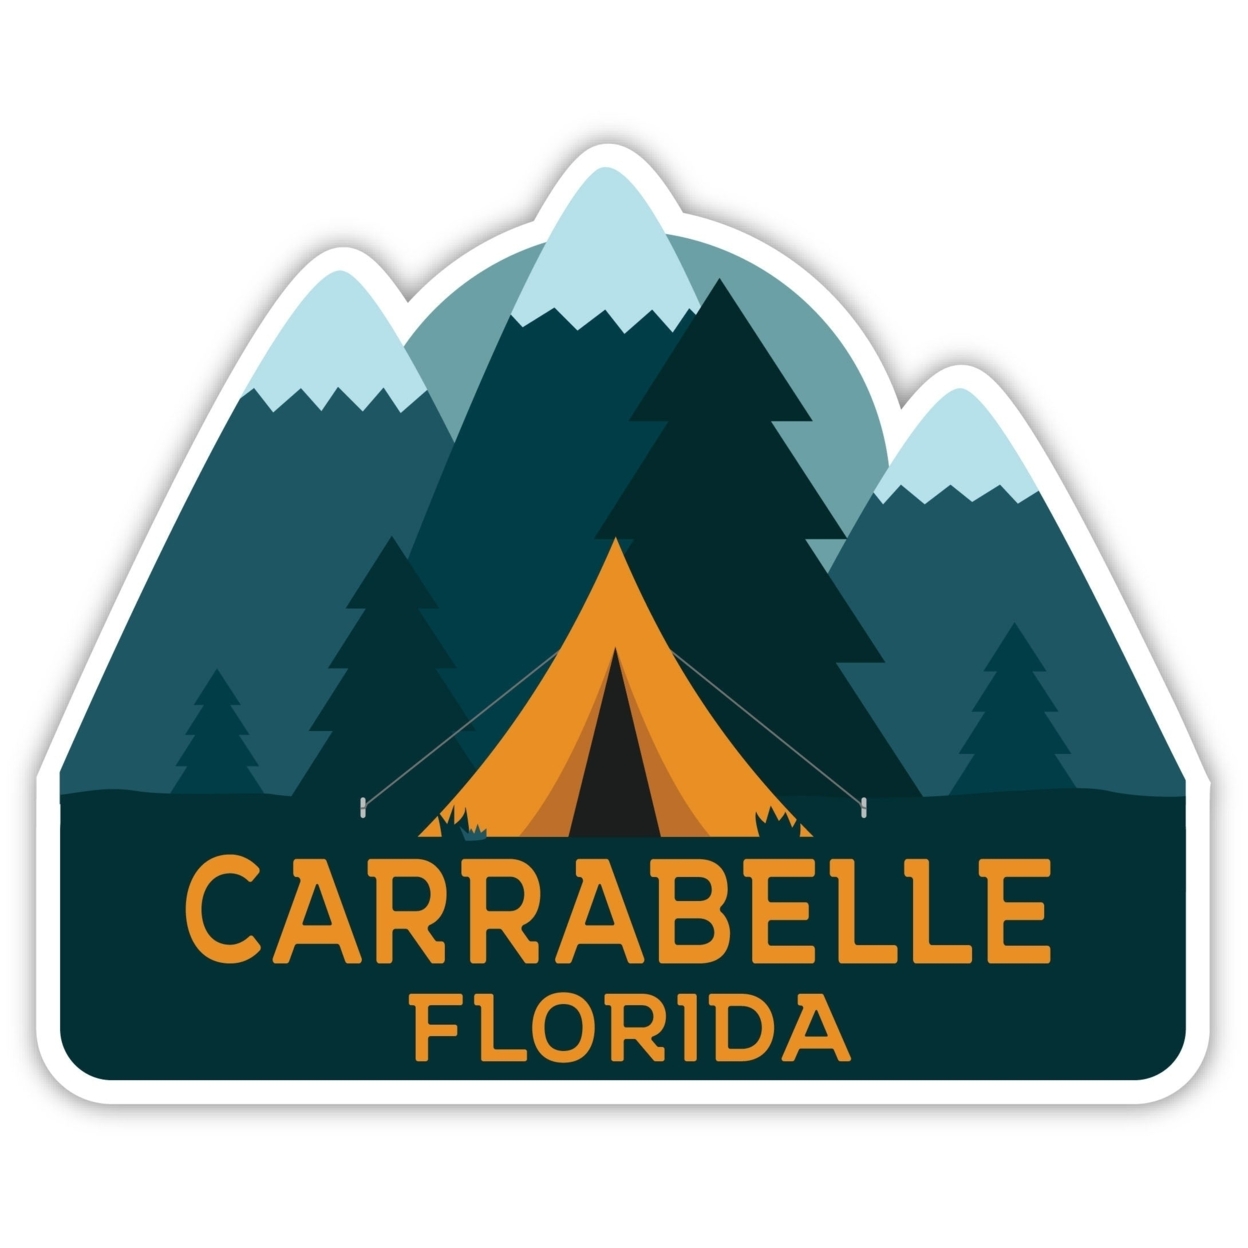 Carrabelle Florida Souvenir Decorative Stickers (Choose Theme And Size) - Single Unit, 10-Inch, Tent